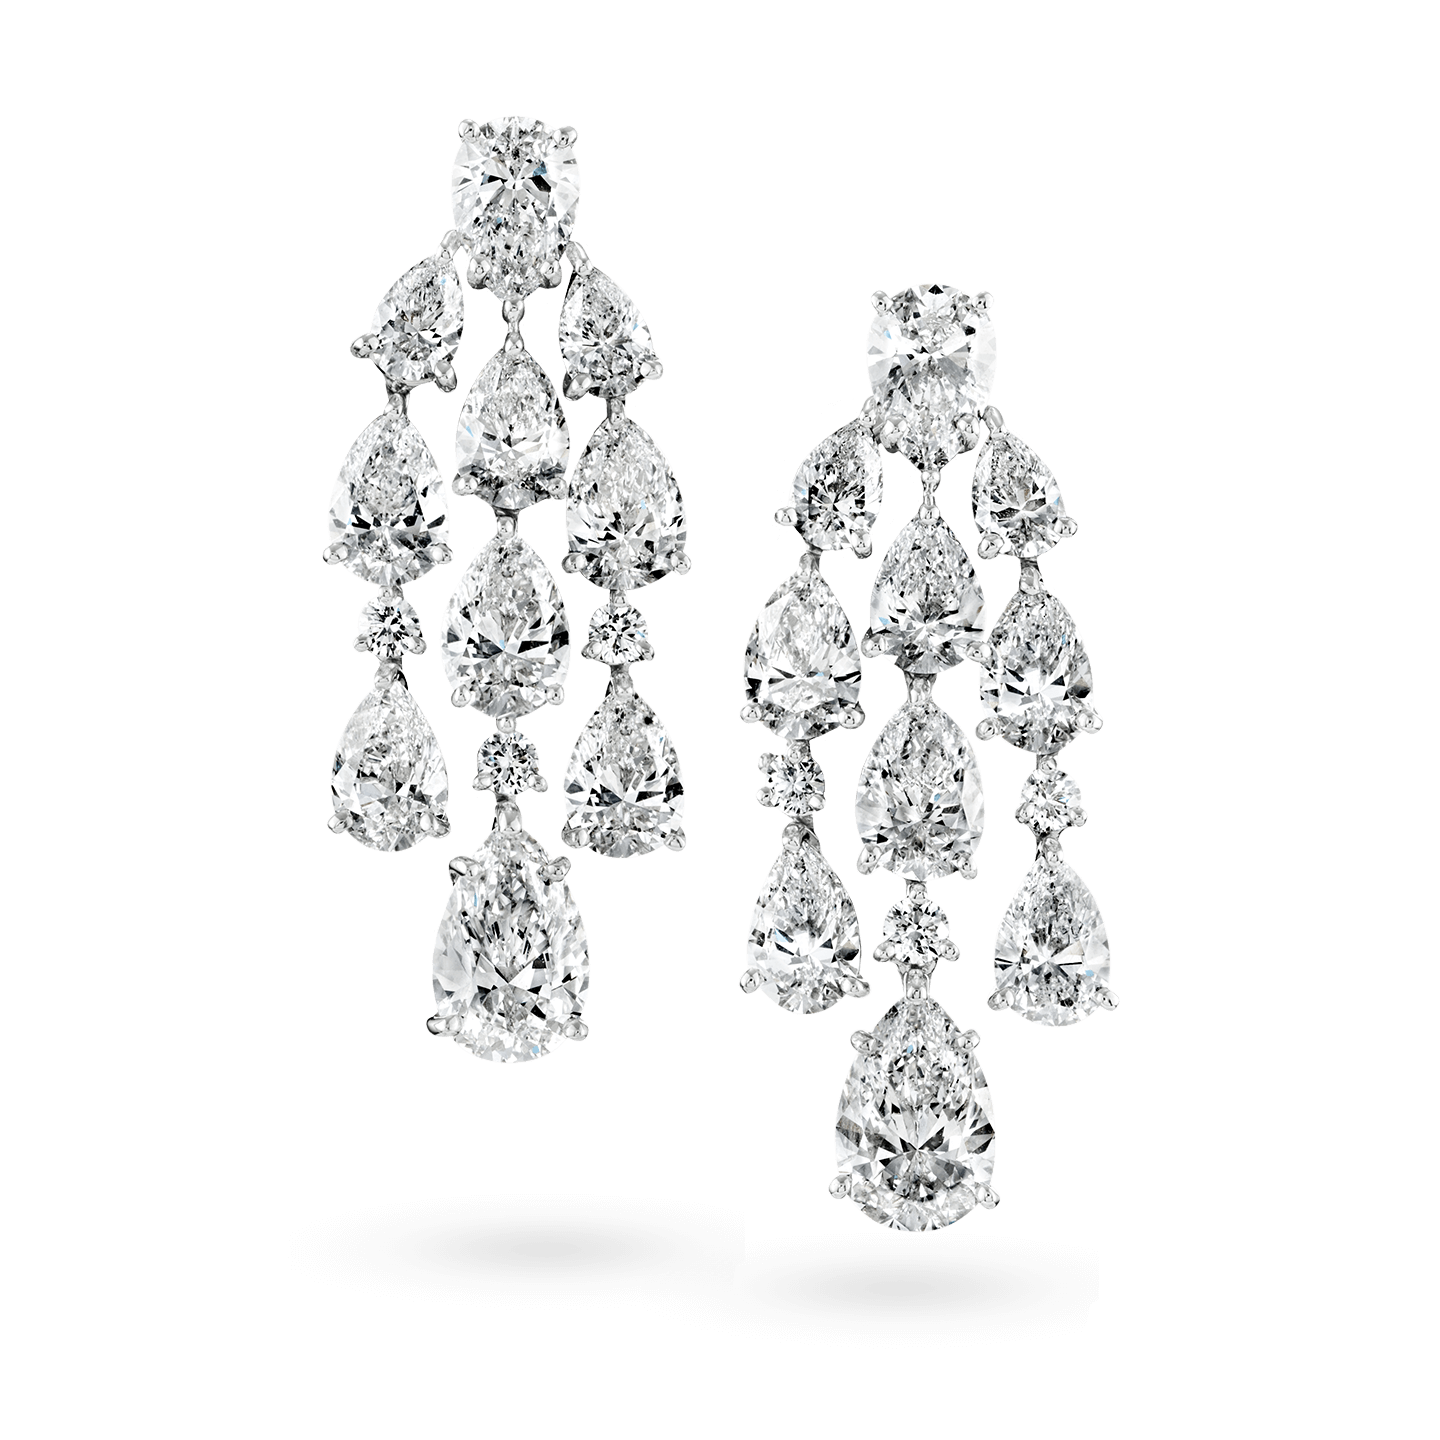 Diamond Chandelier Earrings, Product Image 1